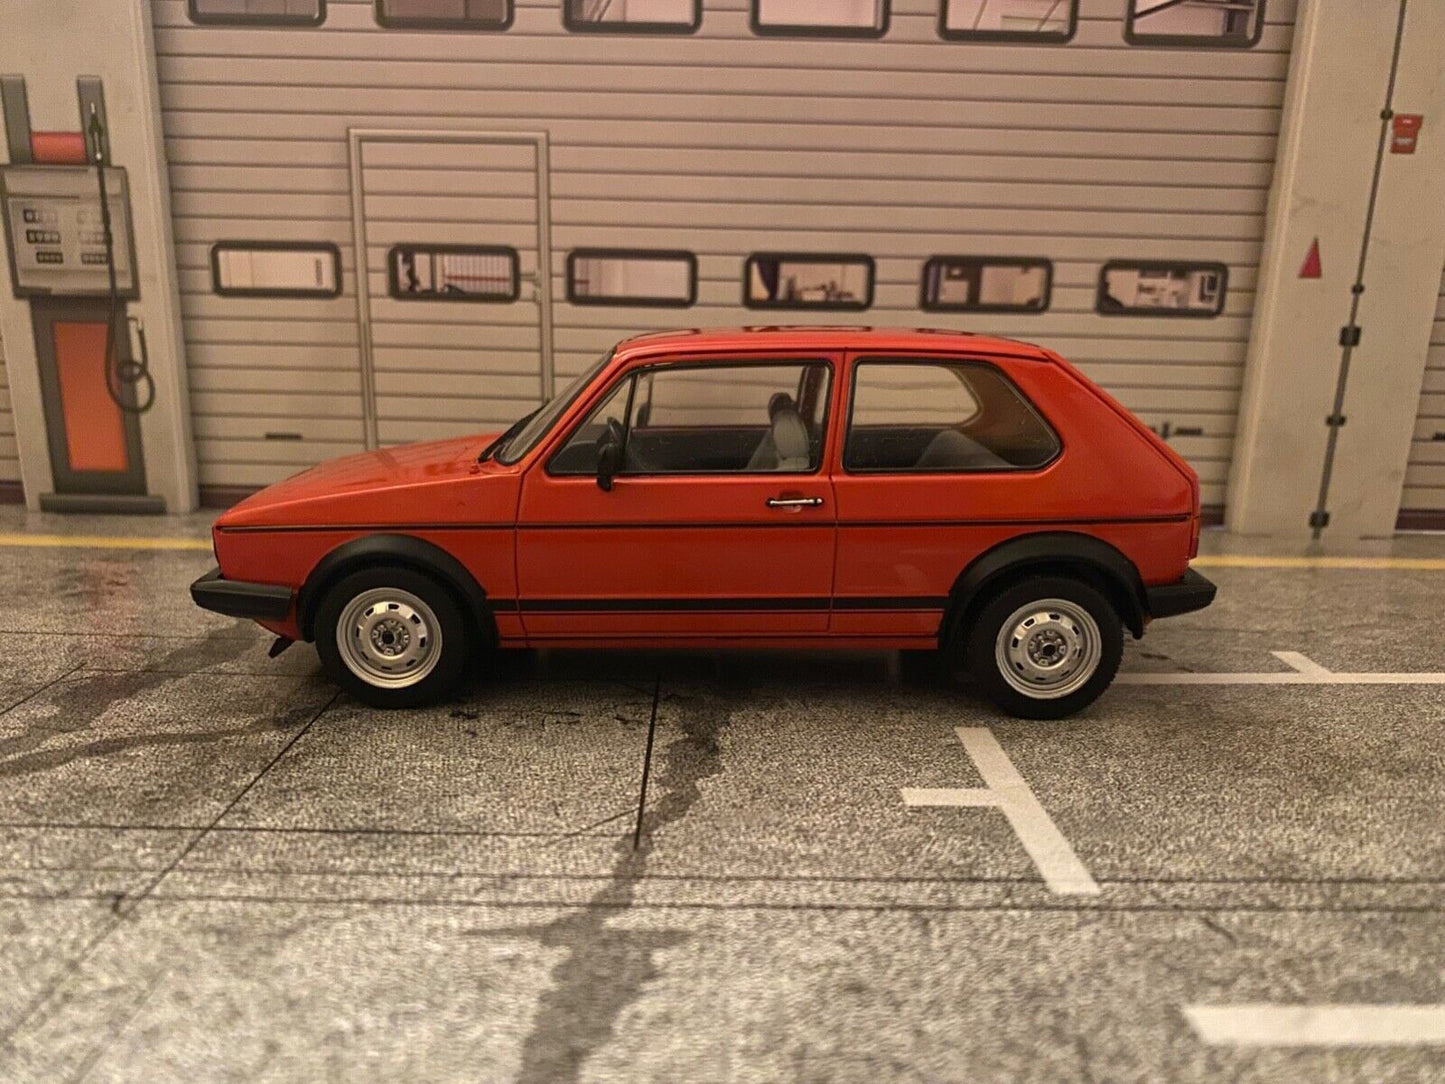 VW Golf 1 GTI 1983 Marsrot red rot gebraucht ohne OVP (kein 1:18) 1:24